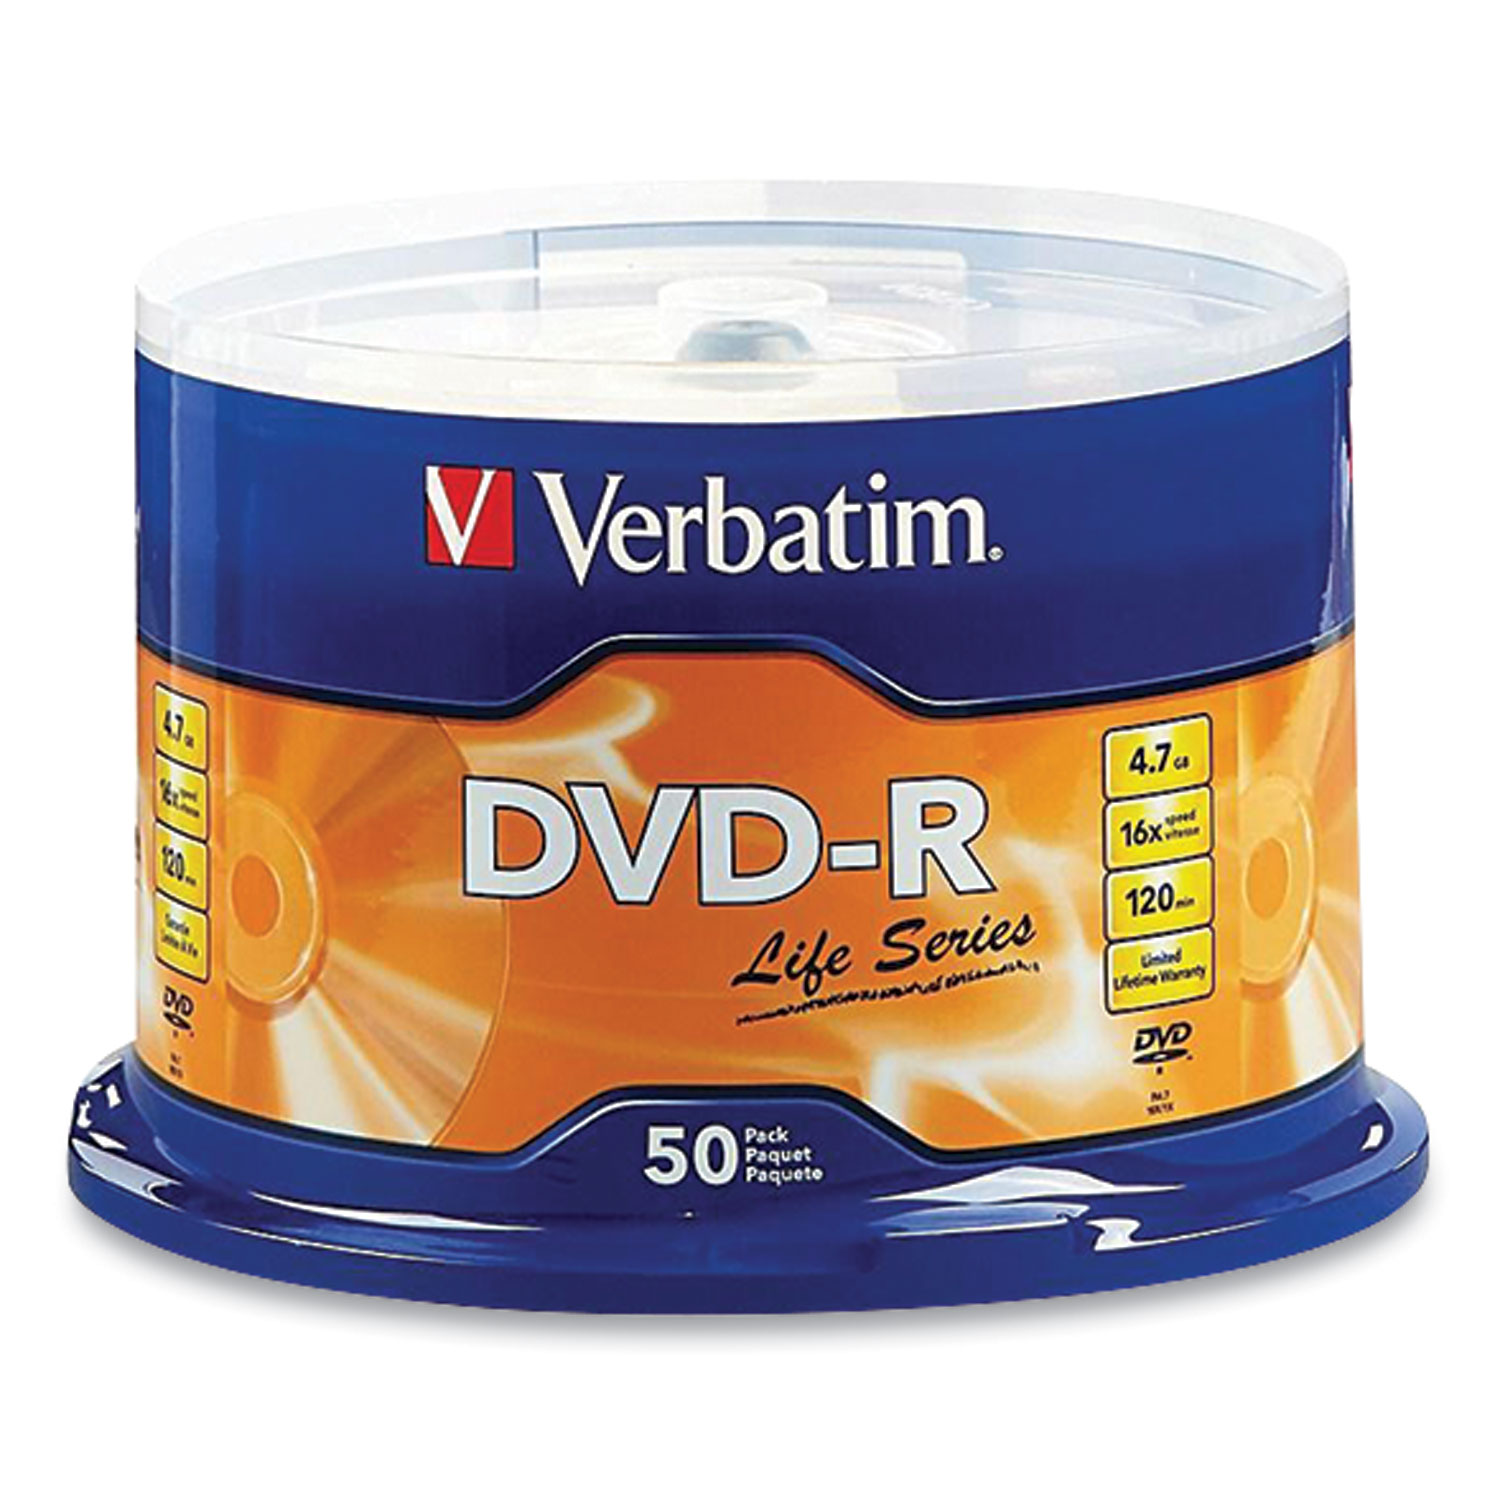  Verbatim 97176 DVD-R LifeSeries Branded Disc, 4.7 GB, 16x, Spindle, Silver, 50/Pack (VER48946) 